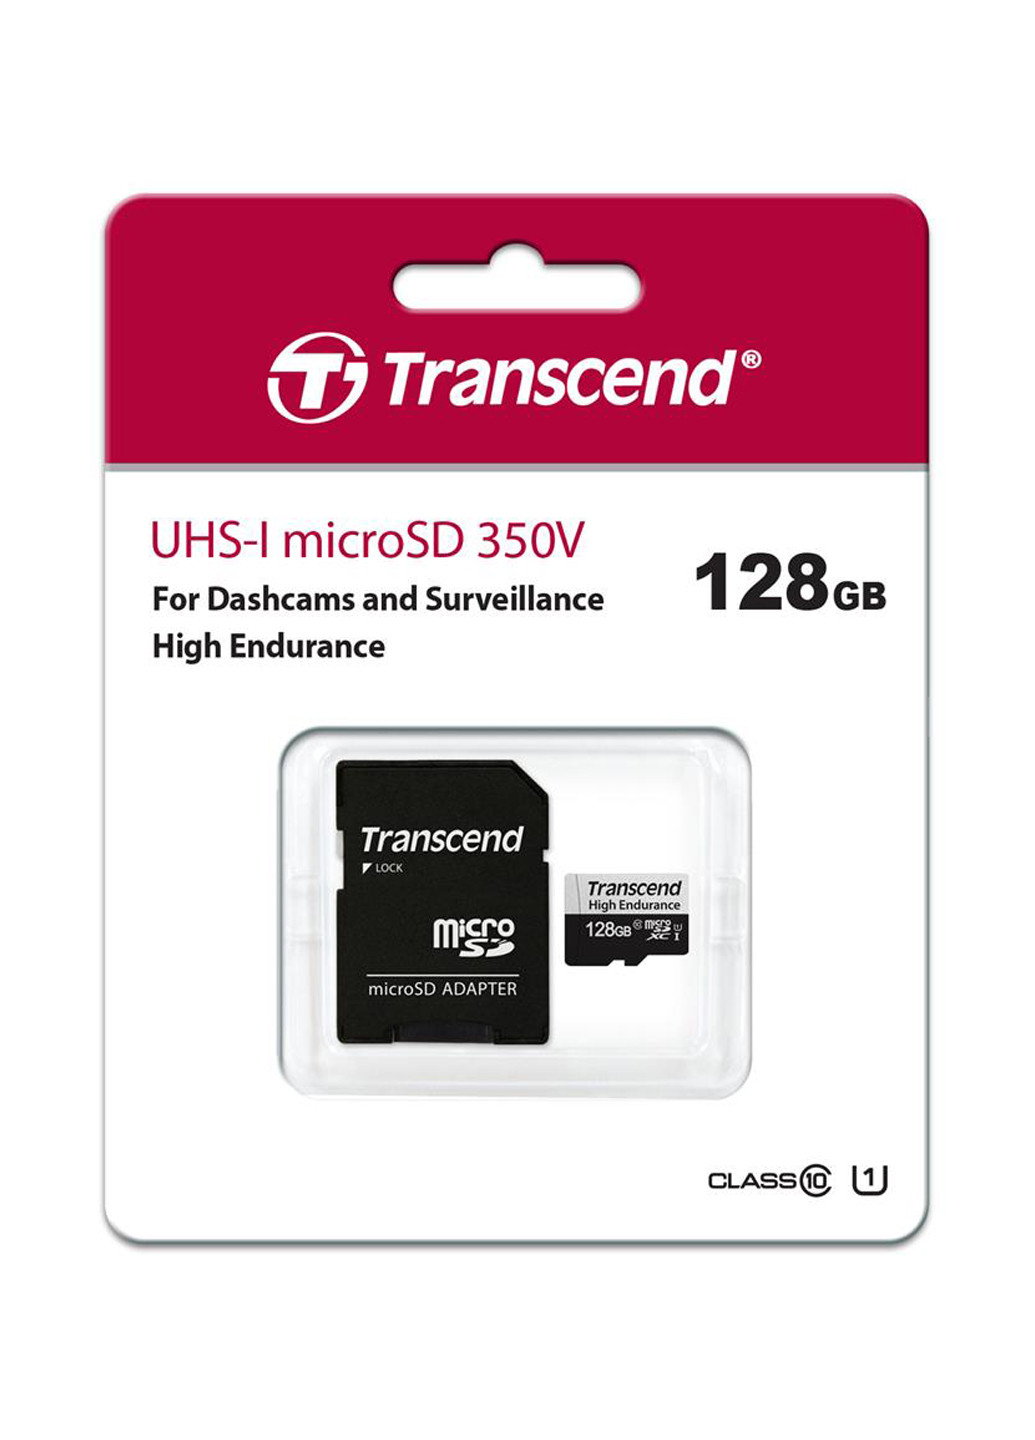 Карта пам'яті microSDXC 128GB C10 UHS-I U1 High Endurance (170TB) (TS128GUSD350V) Transcend карта памяти transcend microsdxc 128gb c10 uhs-i u1 high endurance (170tb) (ts128gusd350v) (130843167)